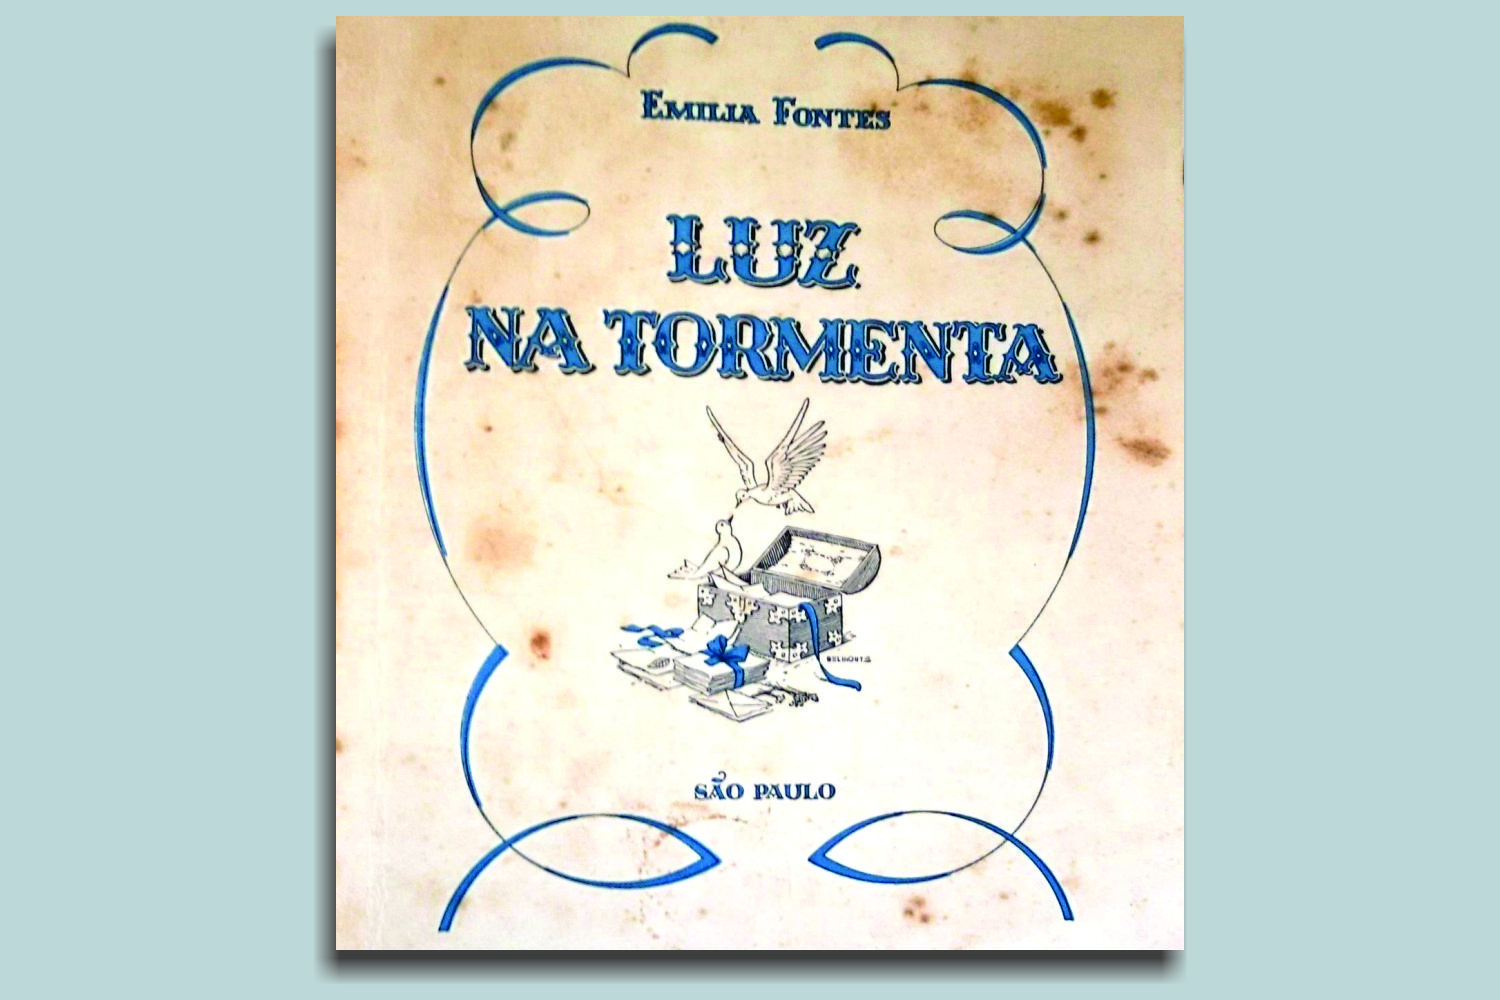 'Luz na tormenta', livro publicado por Emília Fontes, contendo uma coletânea de 140 cartas trocadas entre ela e Joaquim Fontes (acervo da autora)